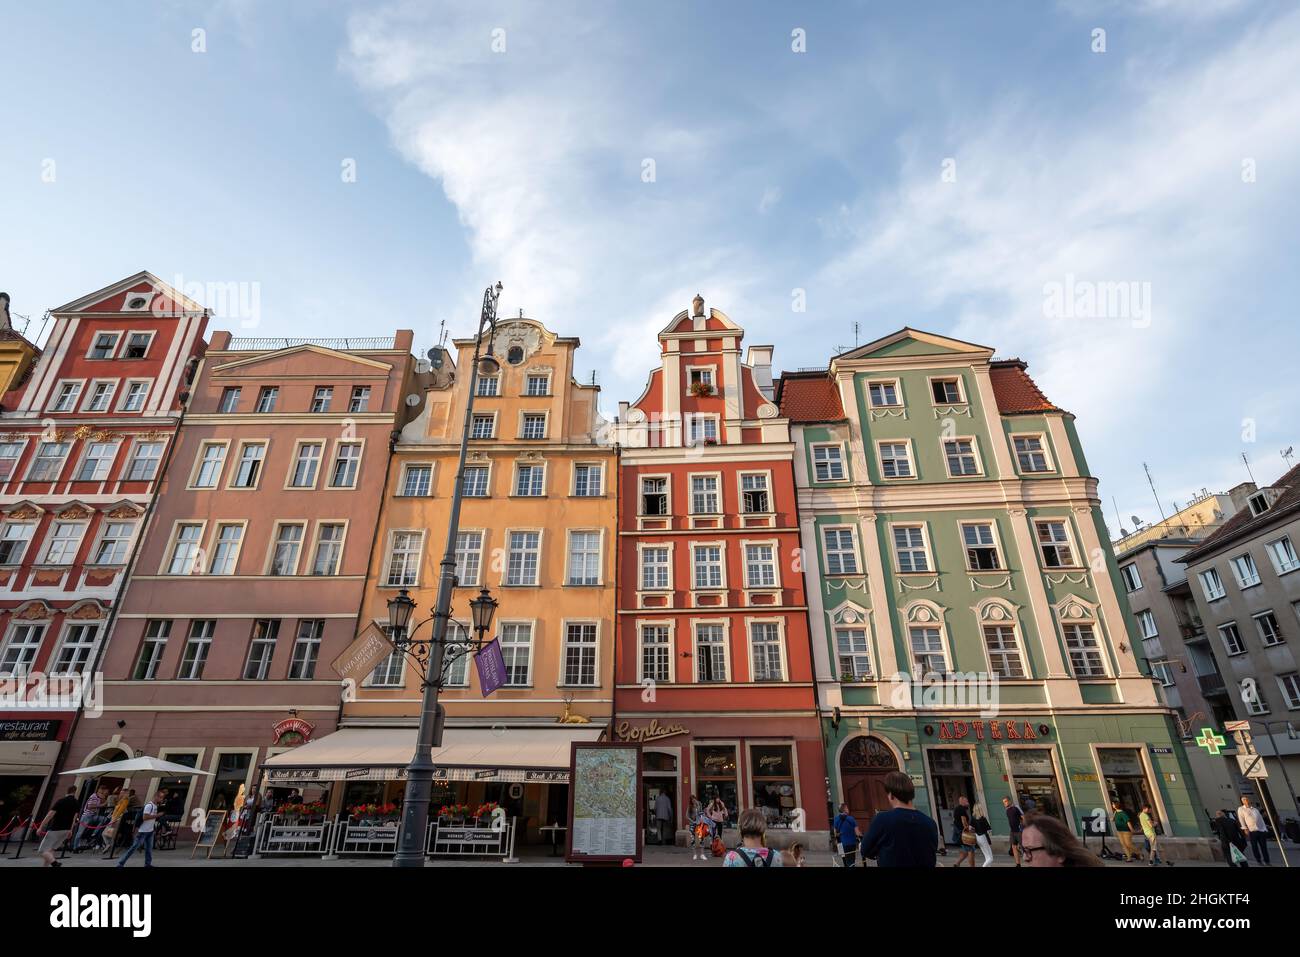 La colorida ciudad alberga edificios en Market Square (Rynek Square) - Wroclaw, Polonia Foto de stock